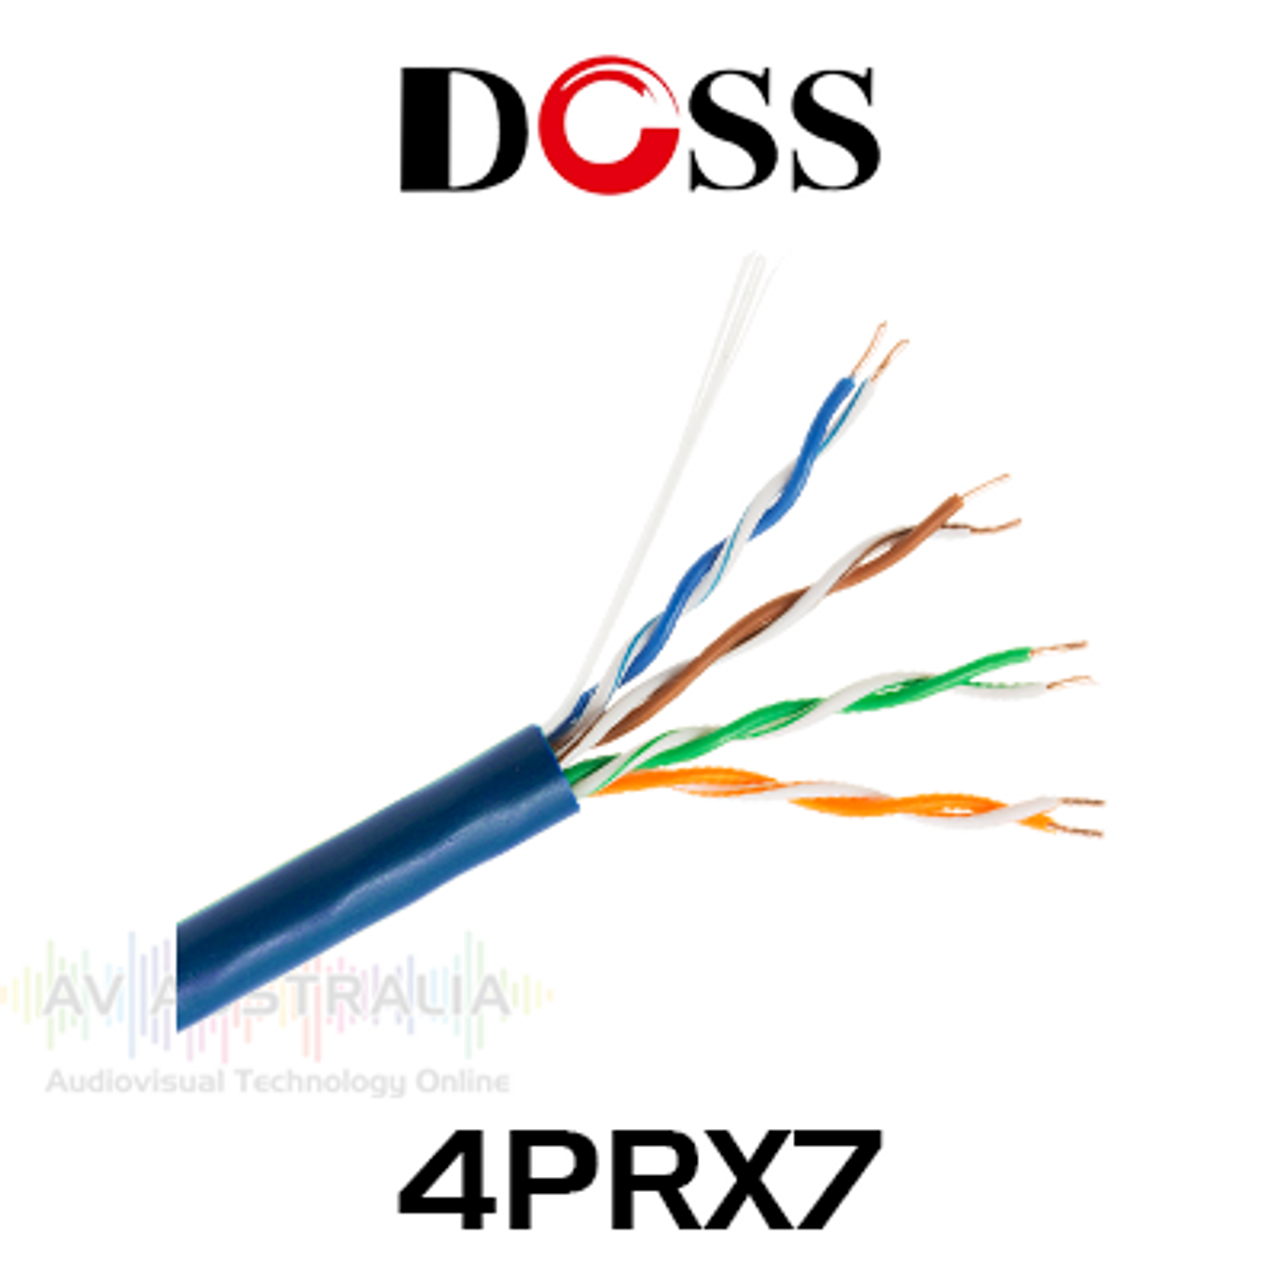 Doss 4PRX7 Cat5E Solid Cable Box (305m)